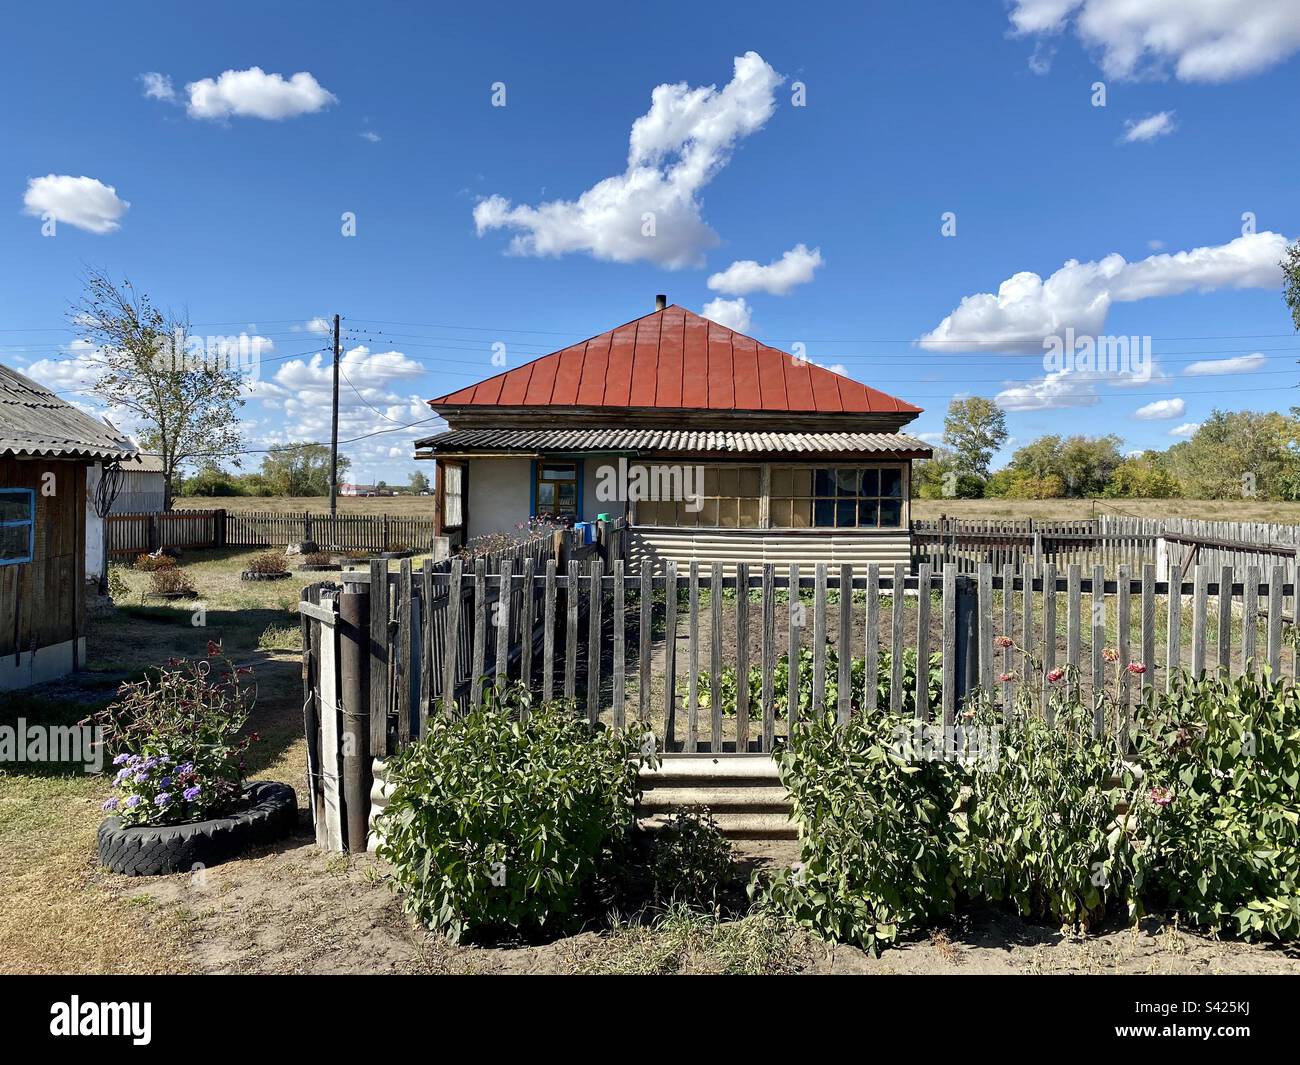 Russische Hütte mit Gemüsegarten hinter dem Zaun von Tieren am Blumenbeet am Nachmittag. Stockfoto